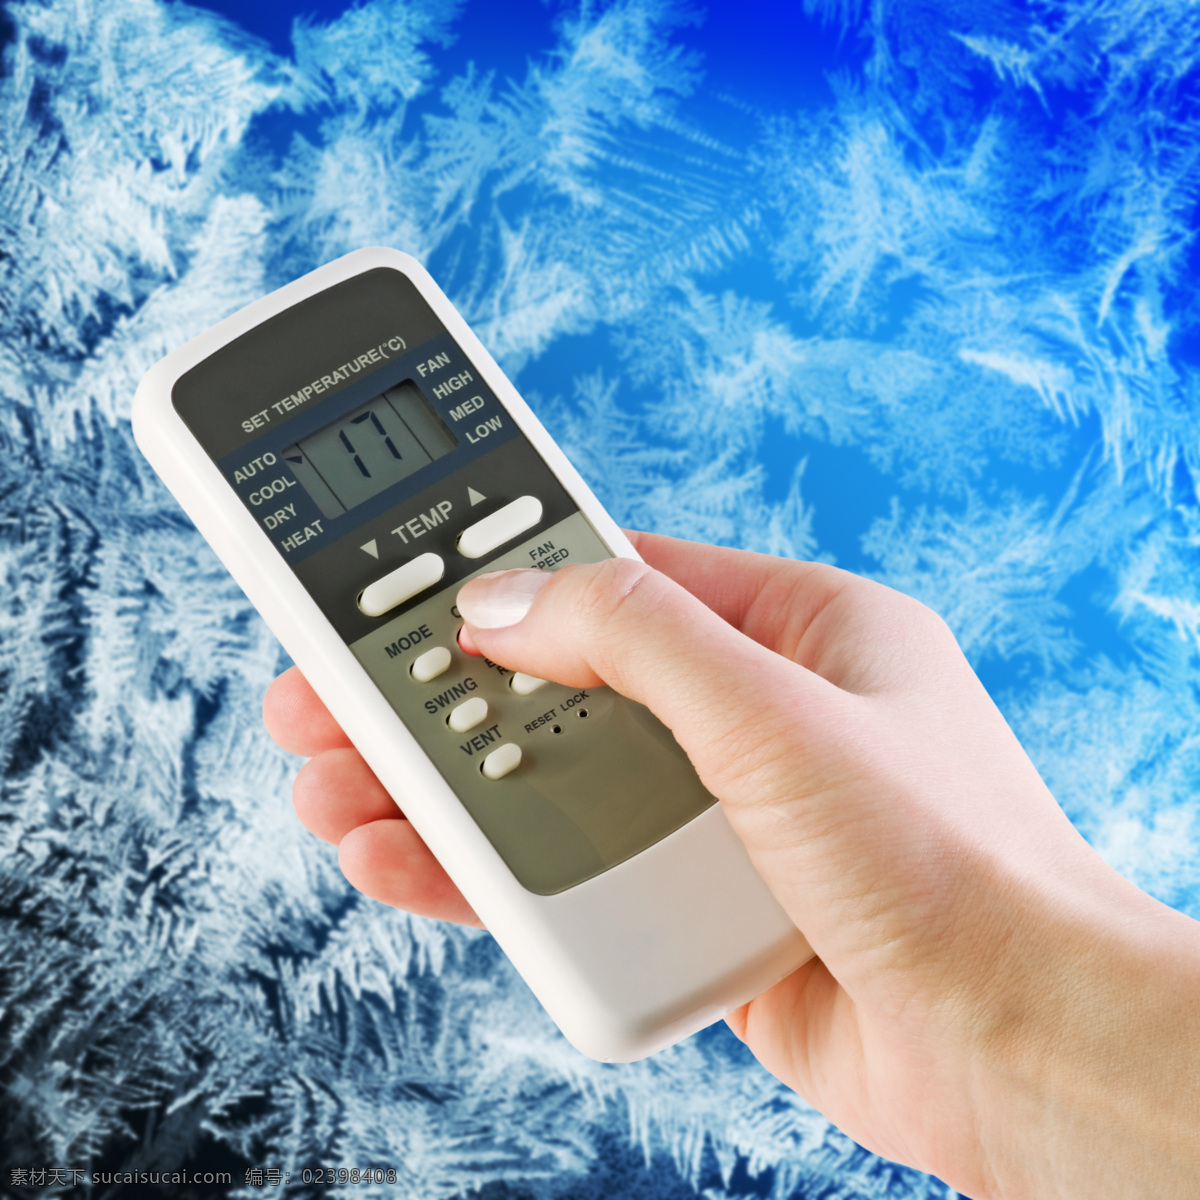 空 调控 调 器 人 空调摇控器 冰雪 空调 挂壁式空调 制冷 家电电器 空调海报 家具电器 生活百科 蓝色